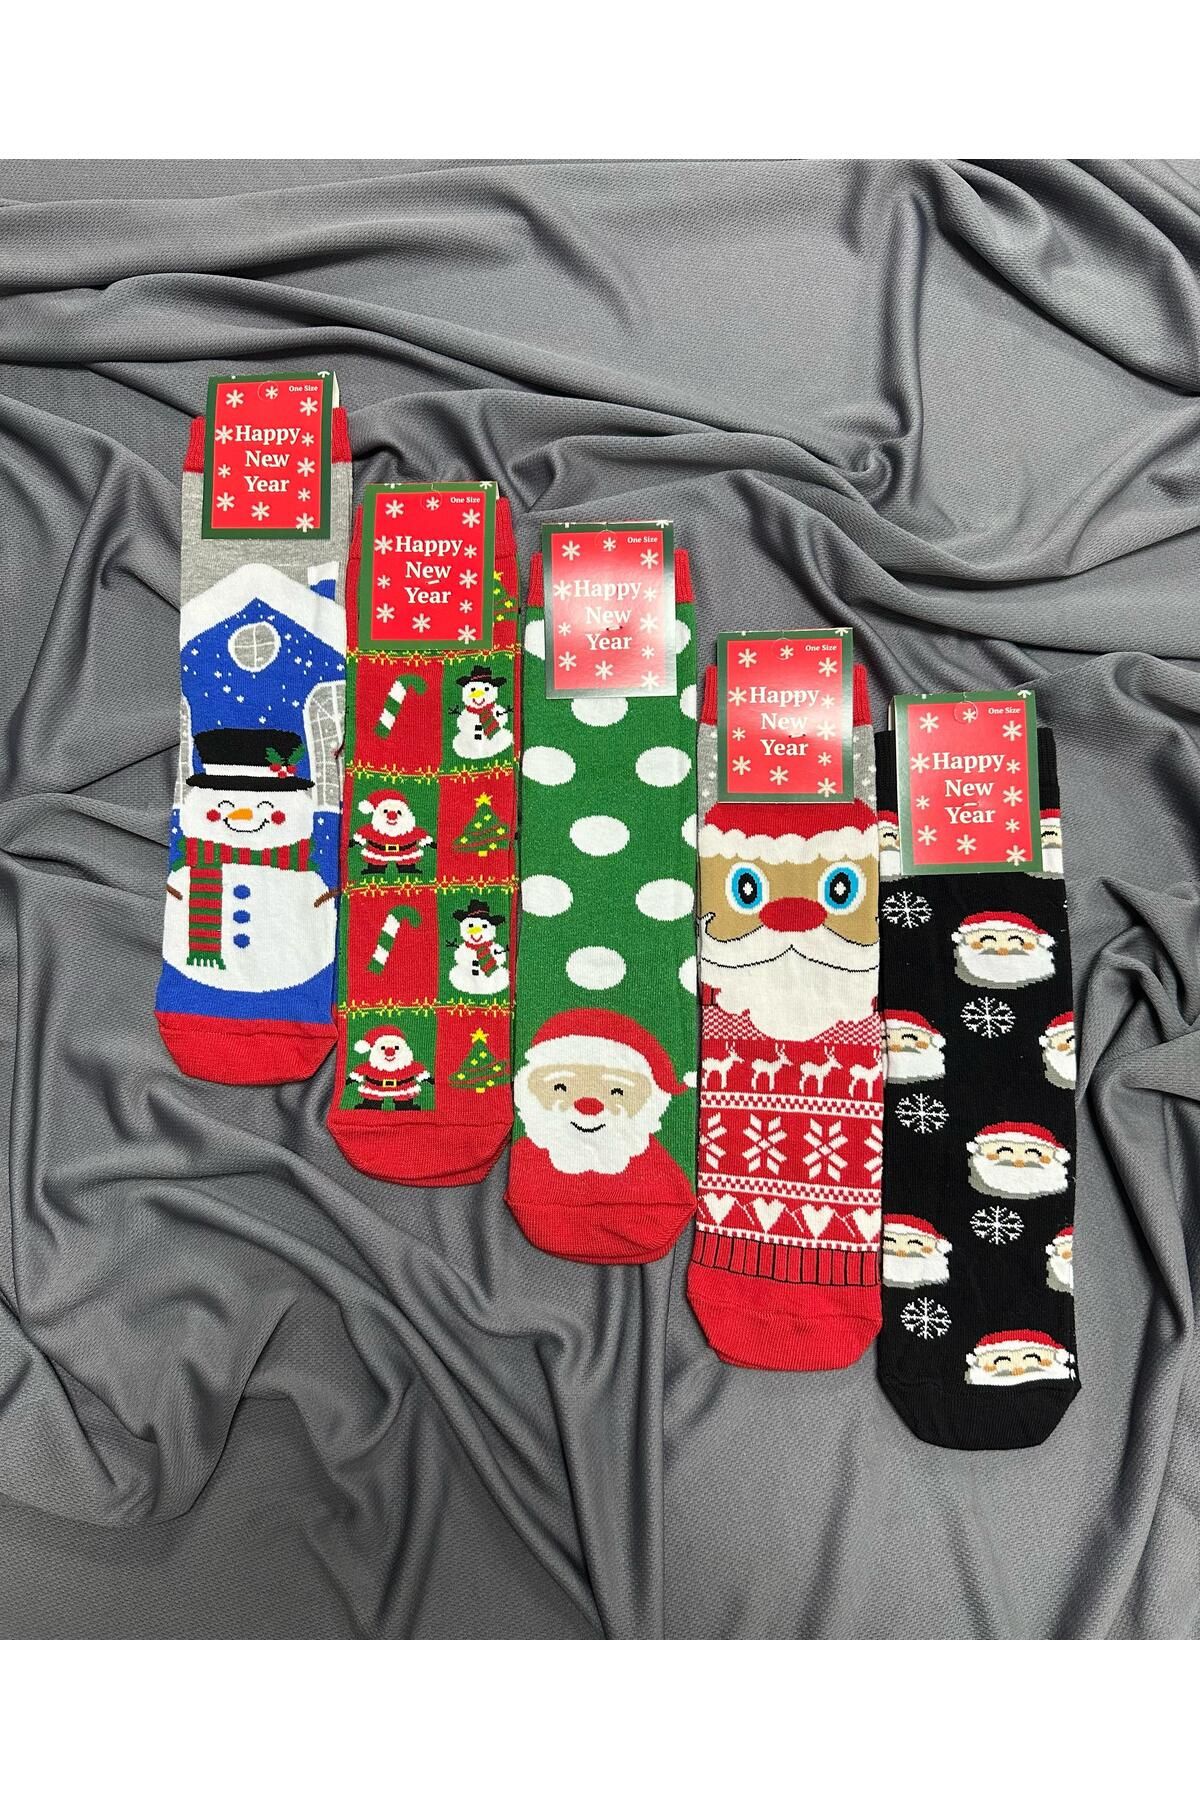 KRC & GLOBAL TEKSTİL Unisex Yılbaşı - Noel - Christmas Temalı Çoraplar 5'Li